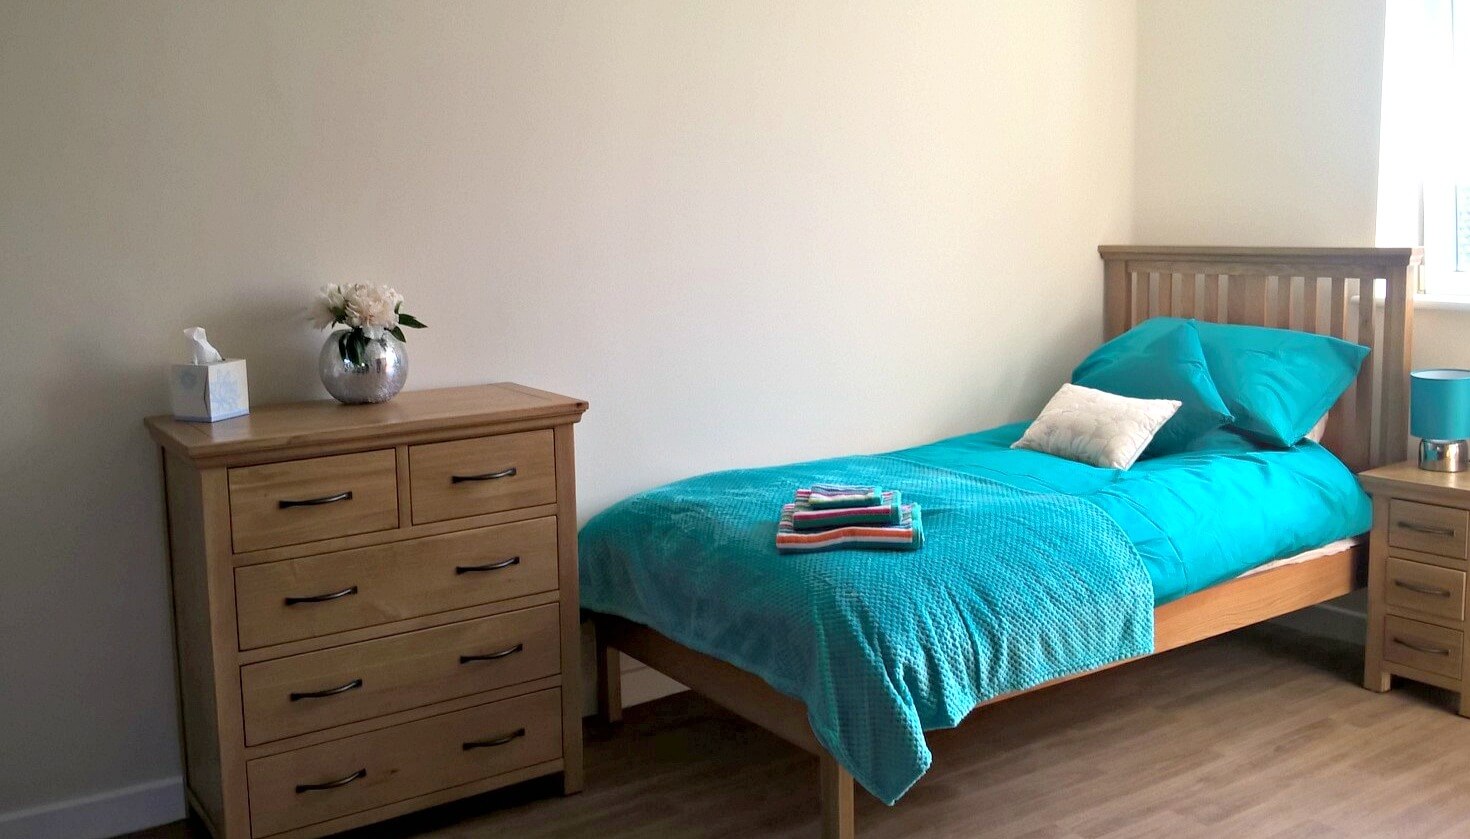 flat bedroom furniture design